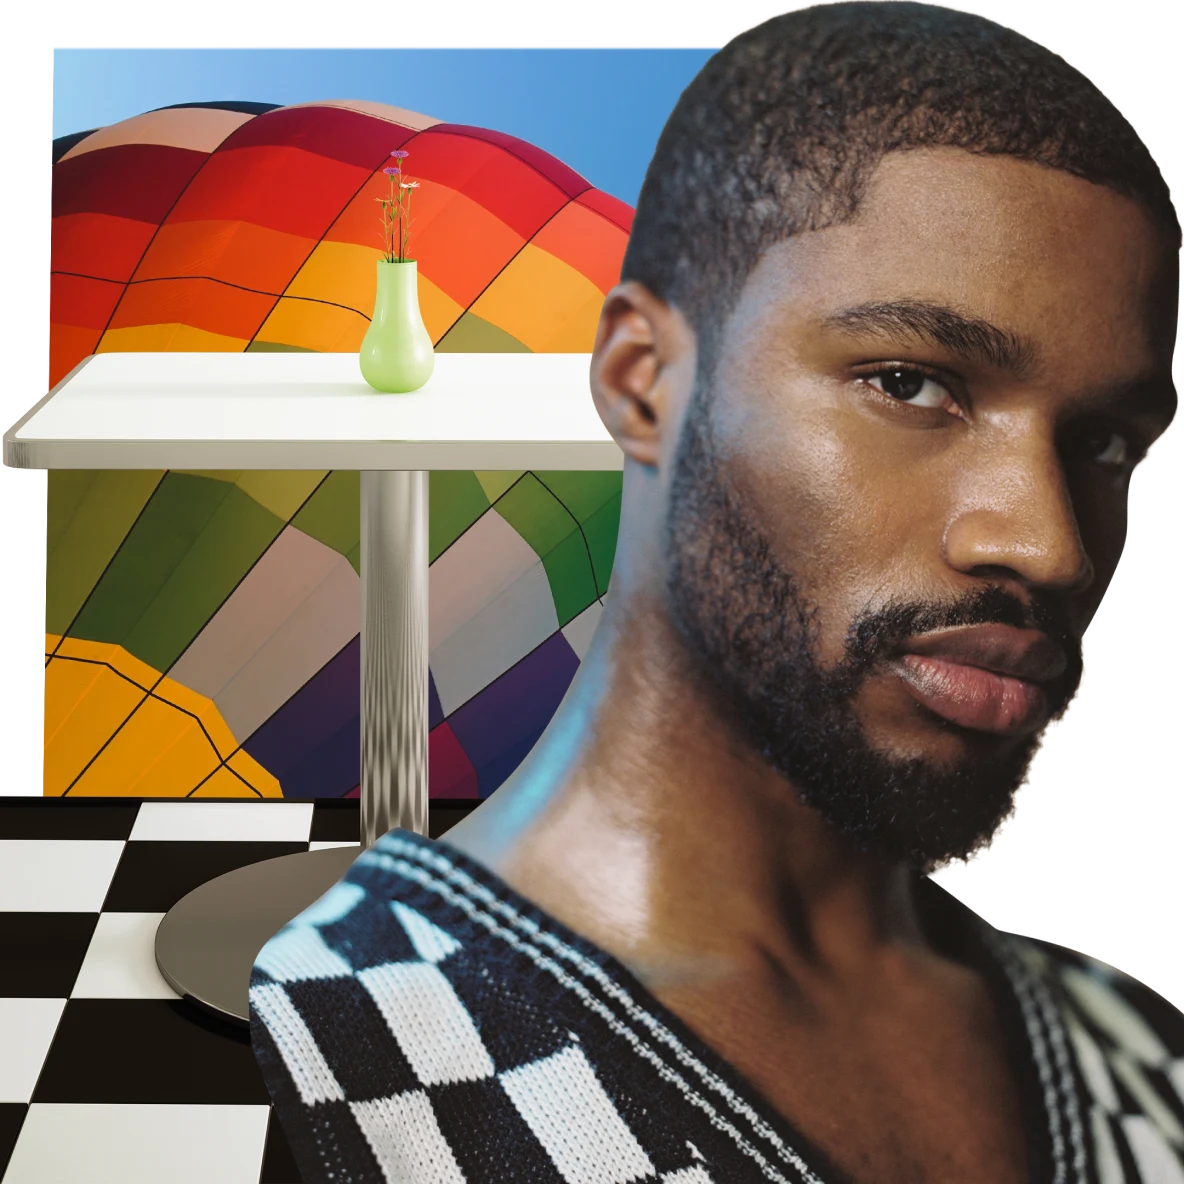 Ein Schwarzer Mann mit kurzem Haar in einem Strickpullover mit Schachbrettmuster und V-Ausschnitt blickt in die Kamera. Ein weißer Tisch, auf dem eine schmale hellgrüne Vase steht. Im Hintergrund ist ein Heißluftballon in Regenbogenfarben zu sehen.